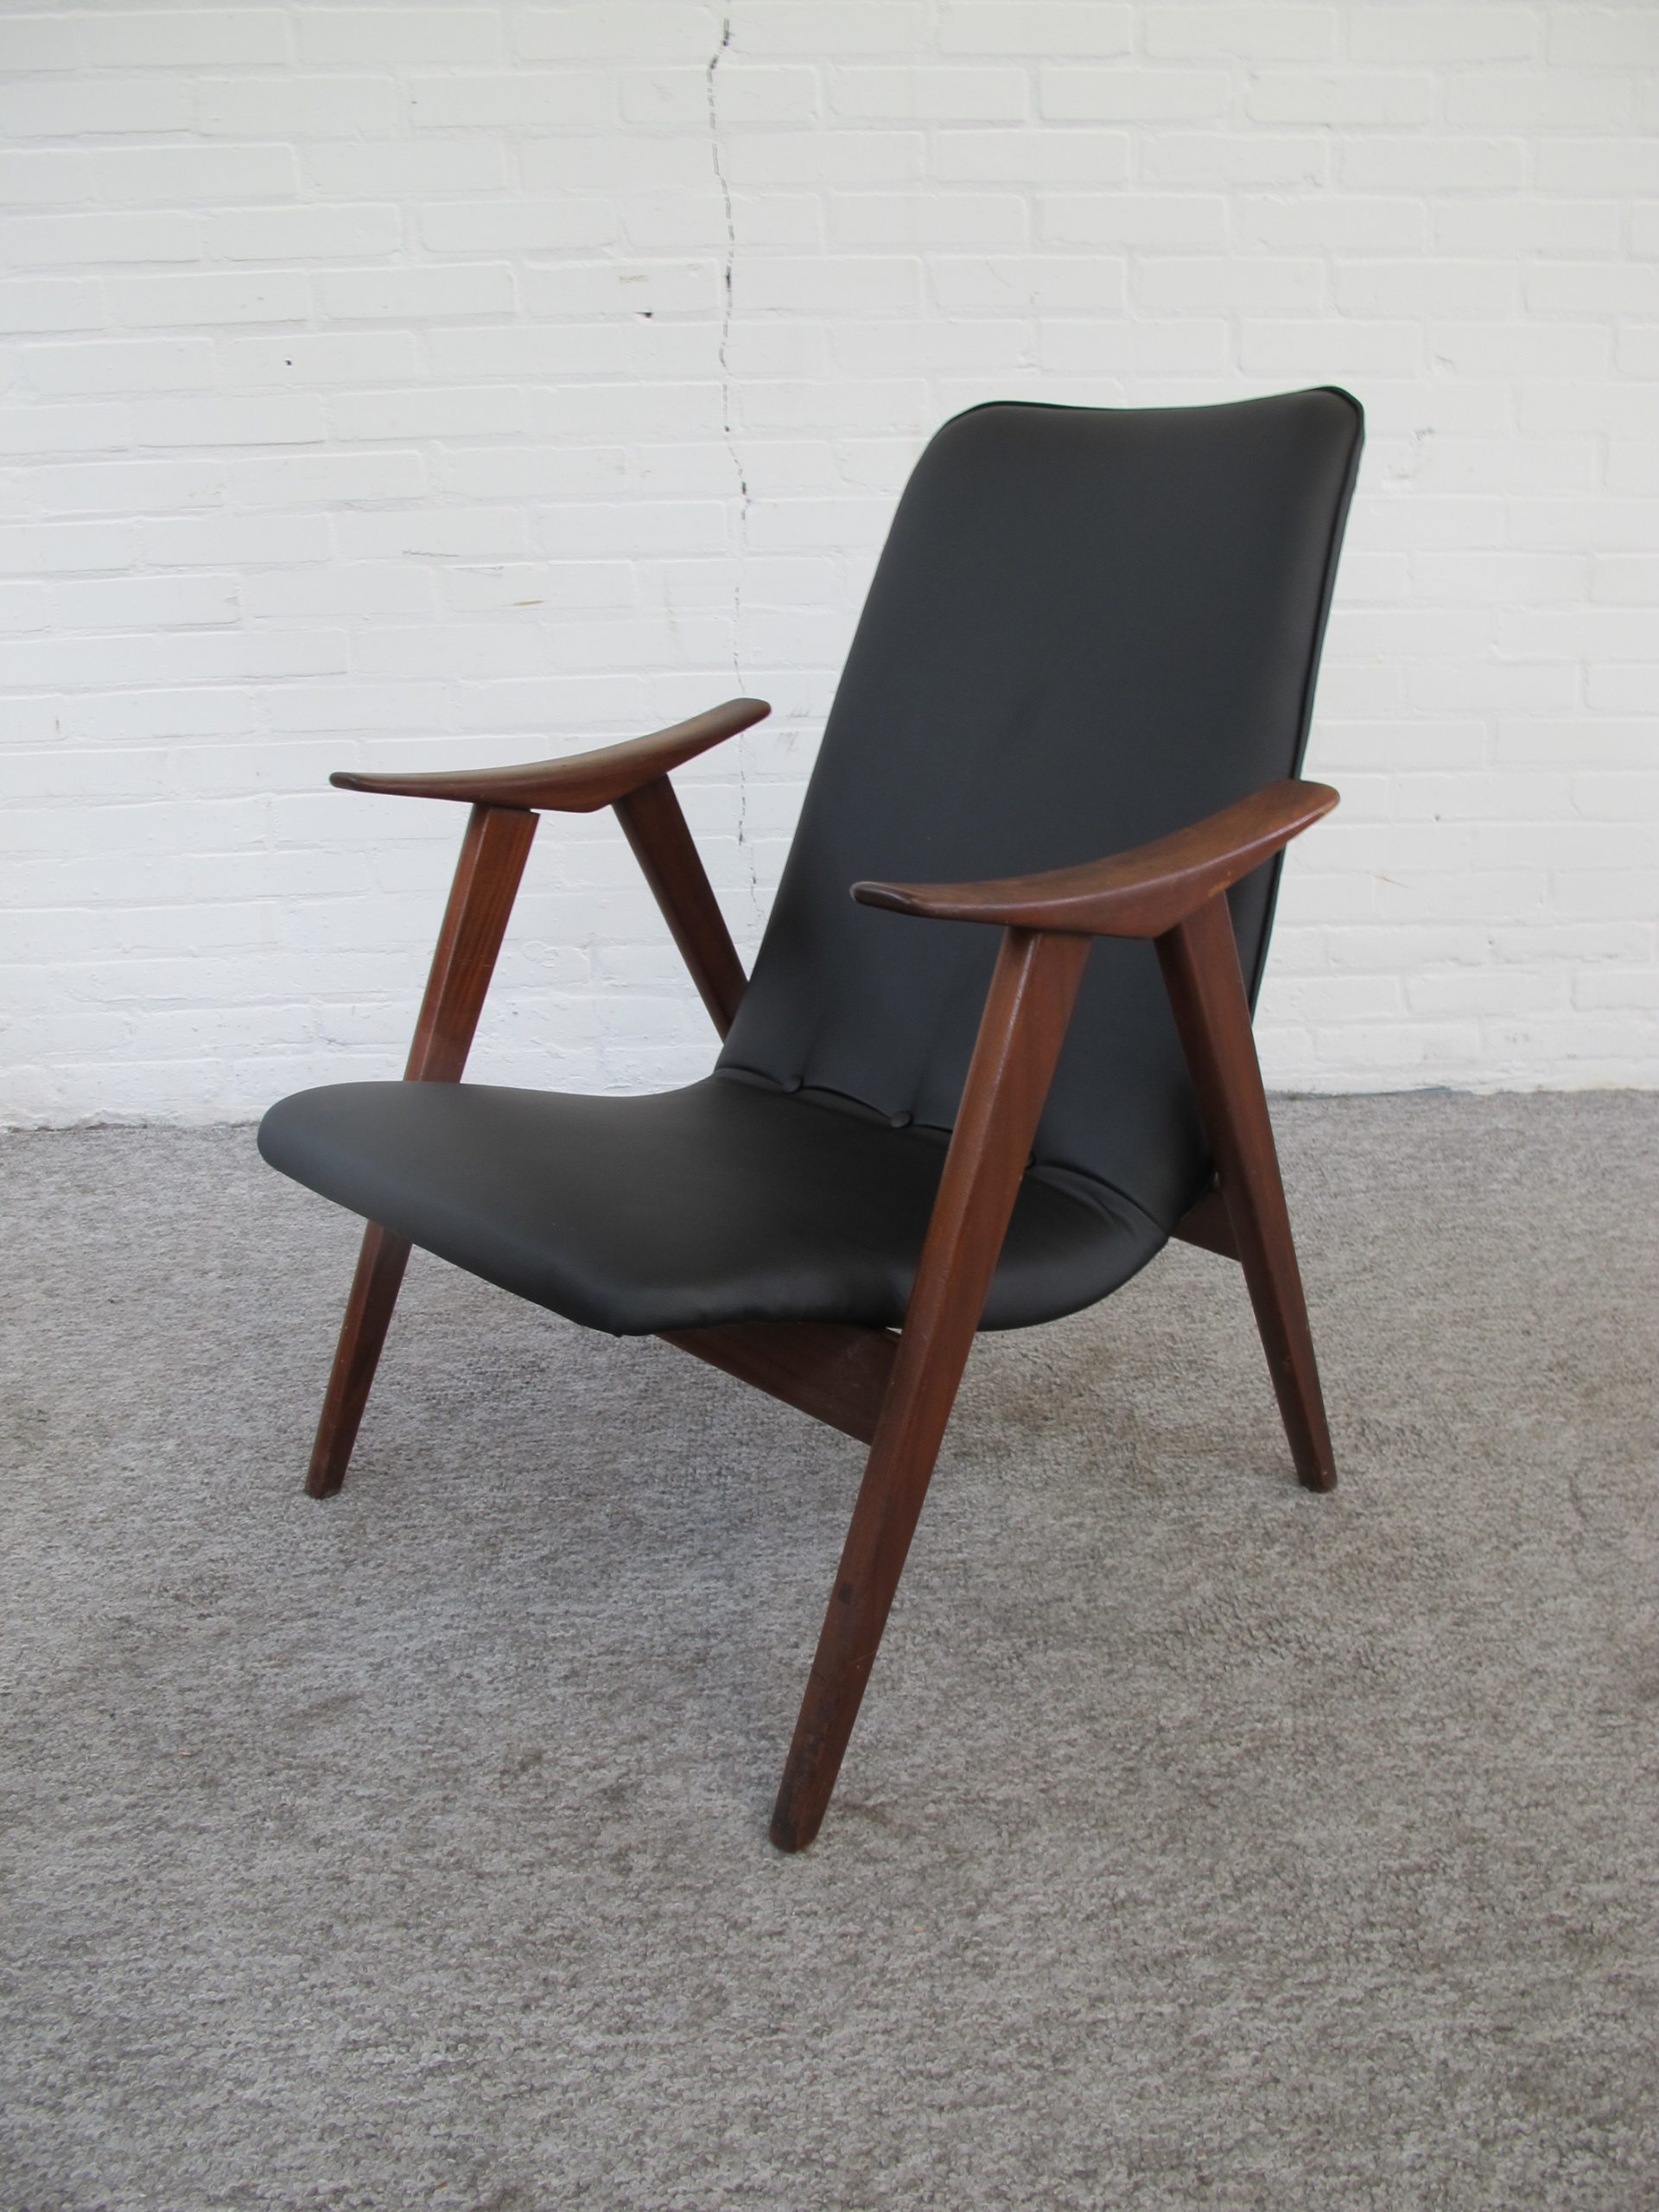 Armchair Louis van Teeffelen Wébé fauteuil vintage midcentury